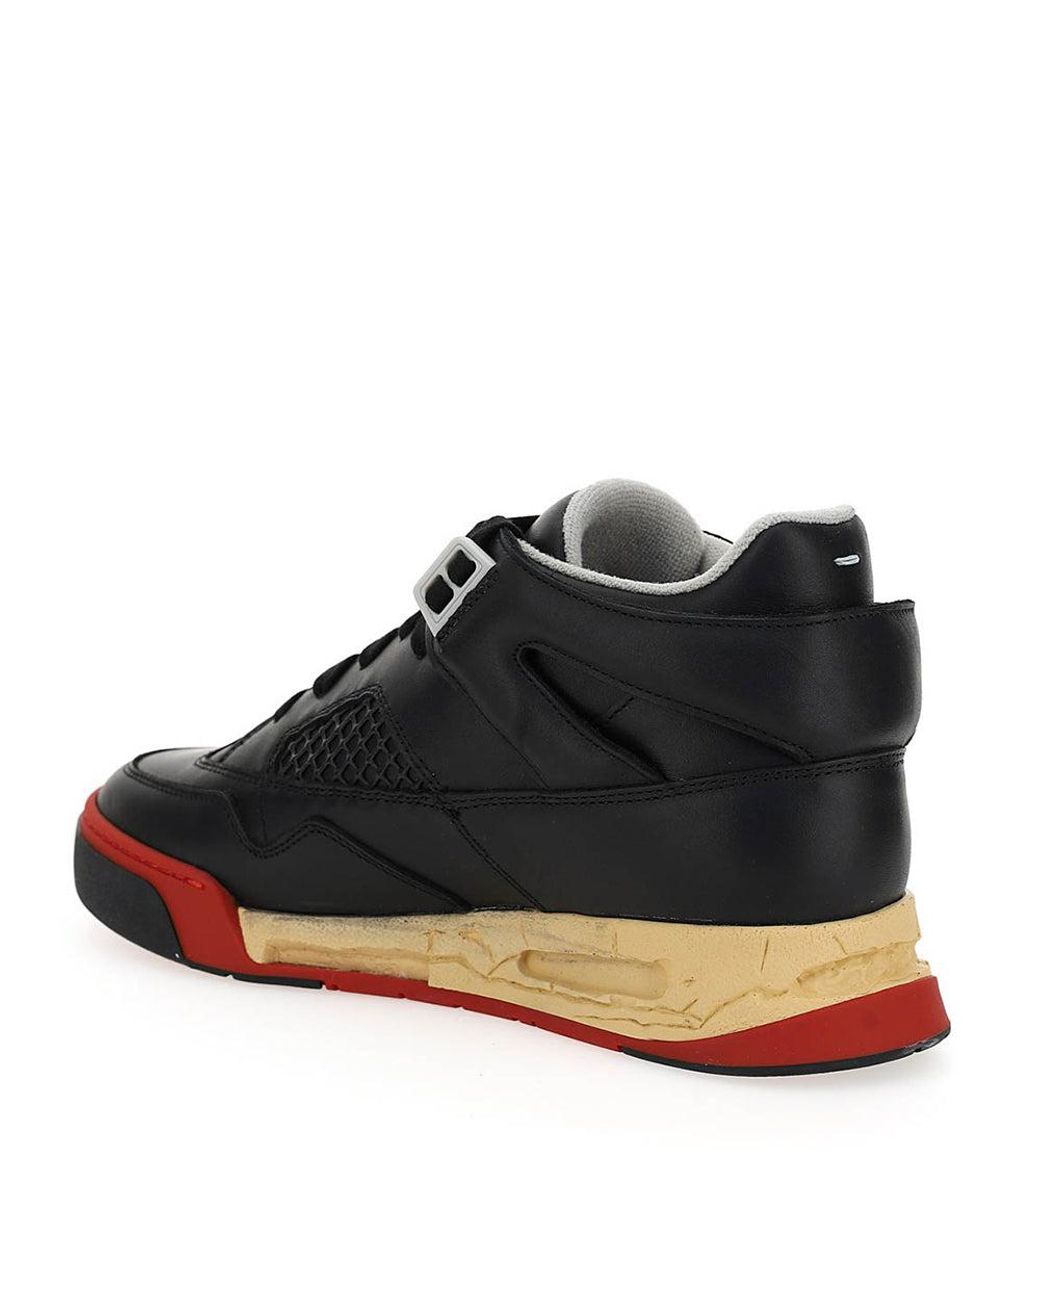 Maison Margiela Deadstock Basket Low Top Leather Sneaker Black Red